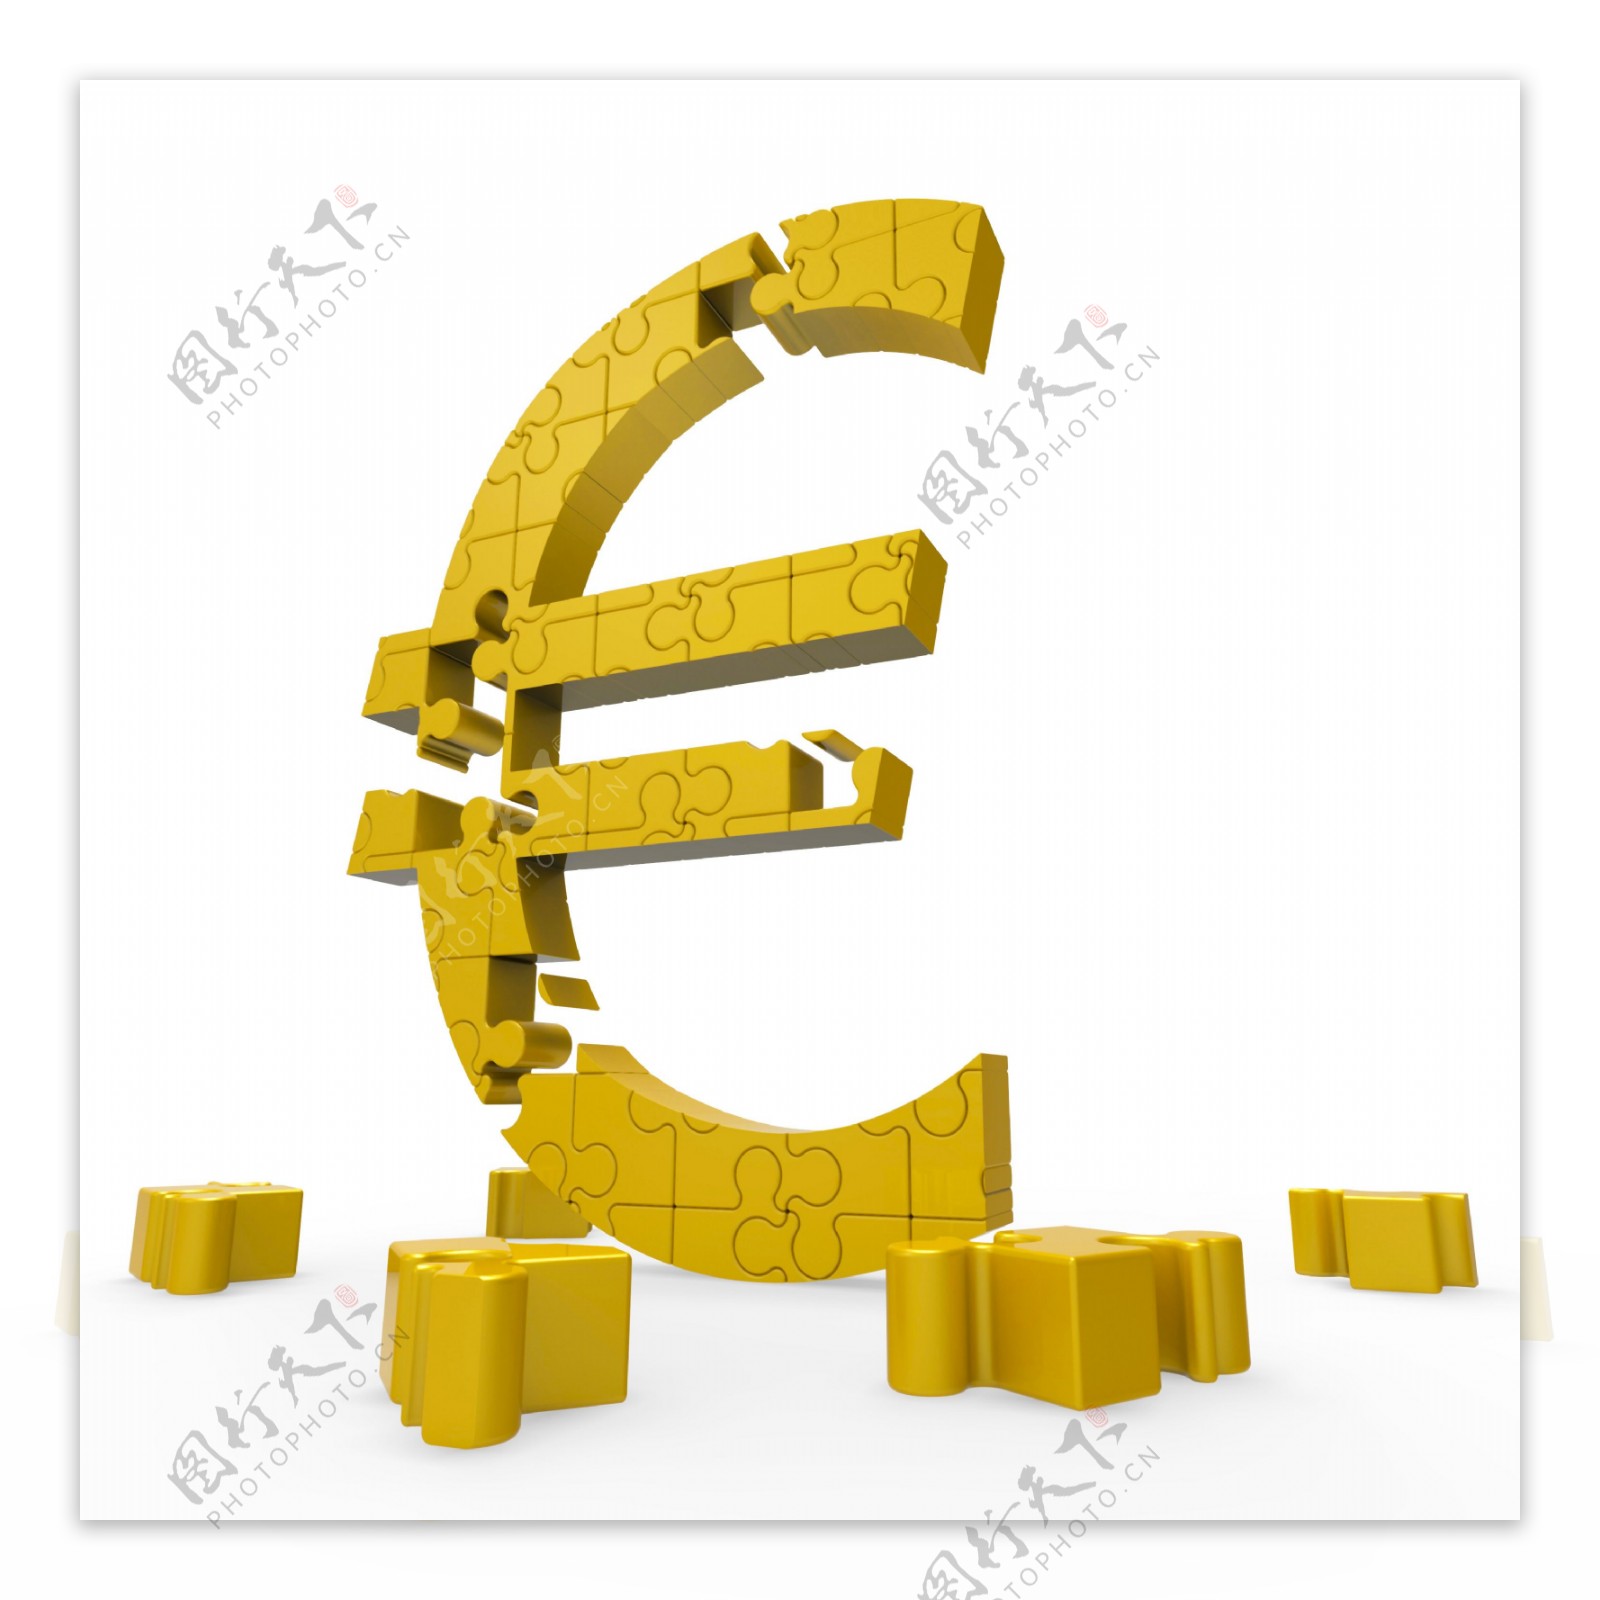 欧元符号显示在欧洲的投资